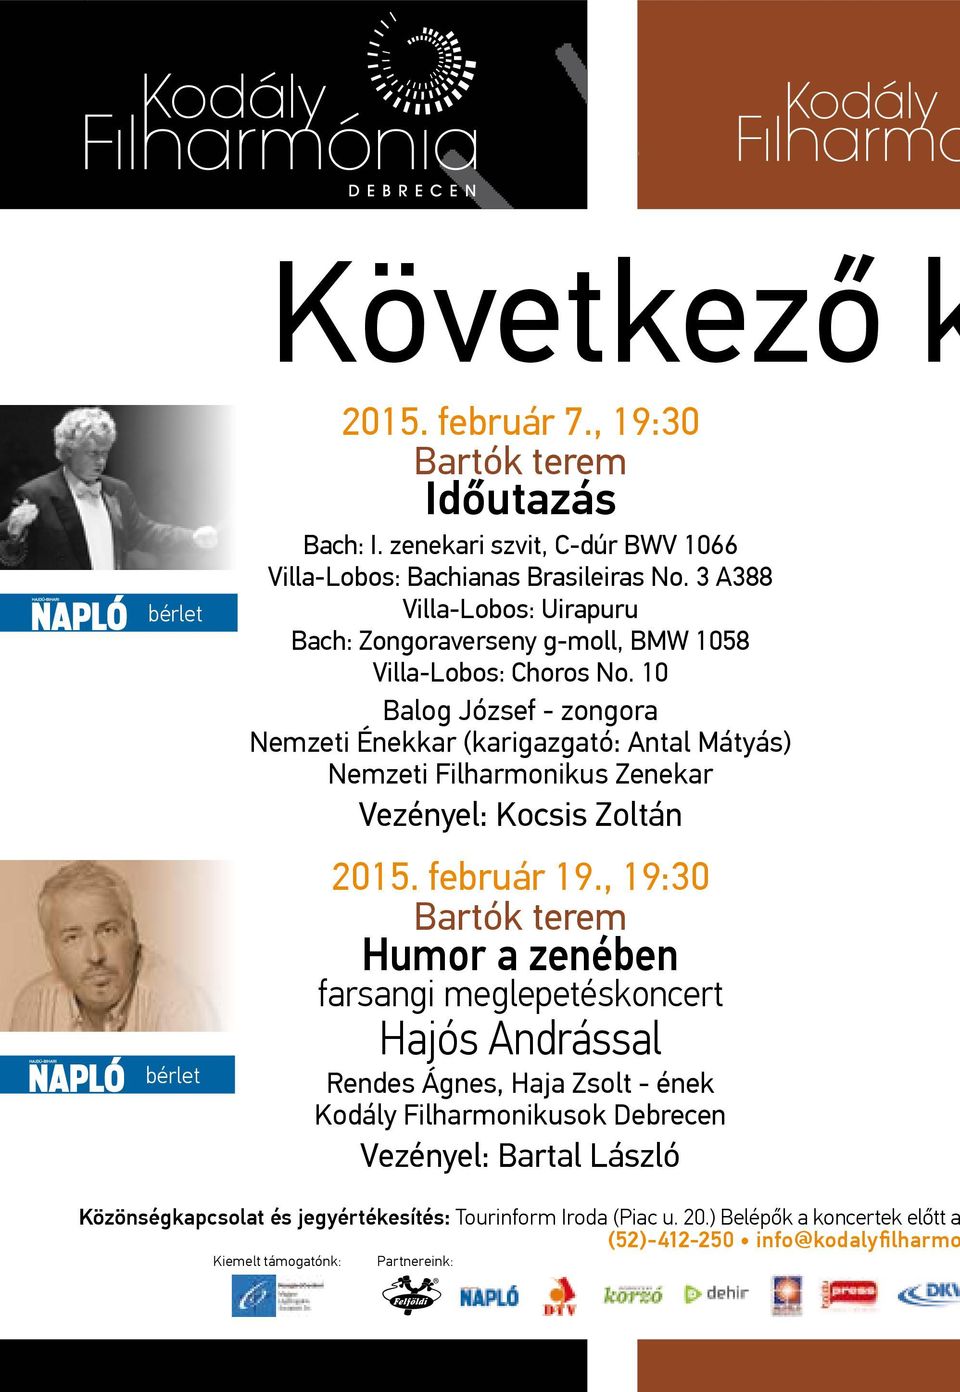 10 Balog József - zongora Nemzeti Énekkar (karigazgató: Antal Mátyás) Nemzeti Filharmonikus Zenekar Vezényel: Kocsis Zoltán 2015. február 19.